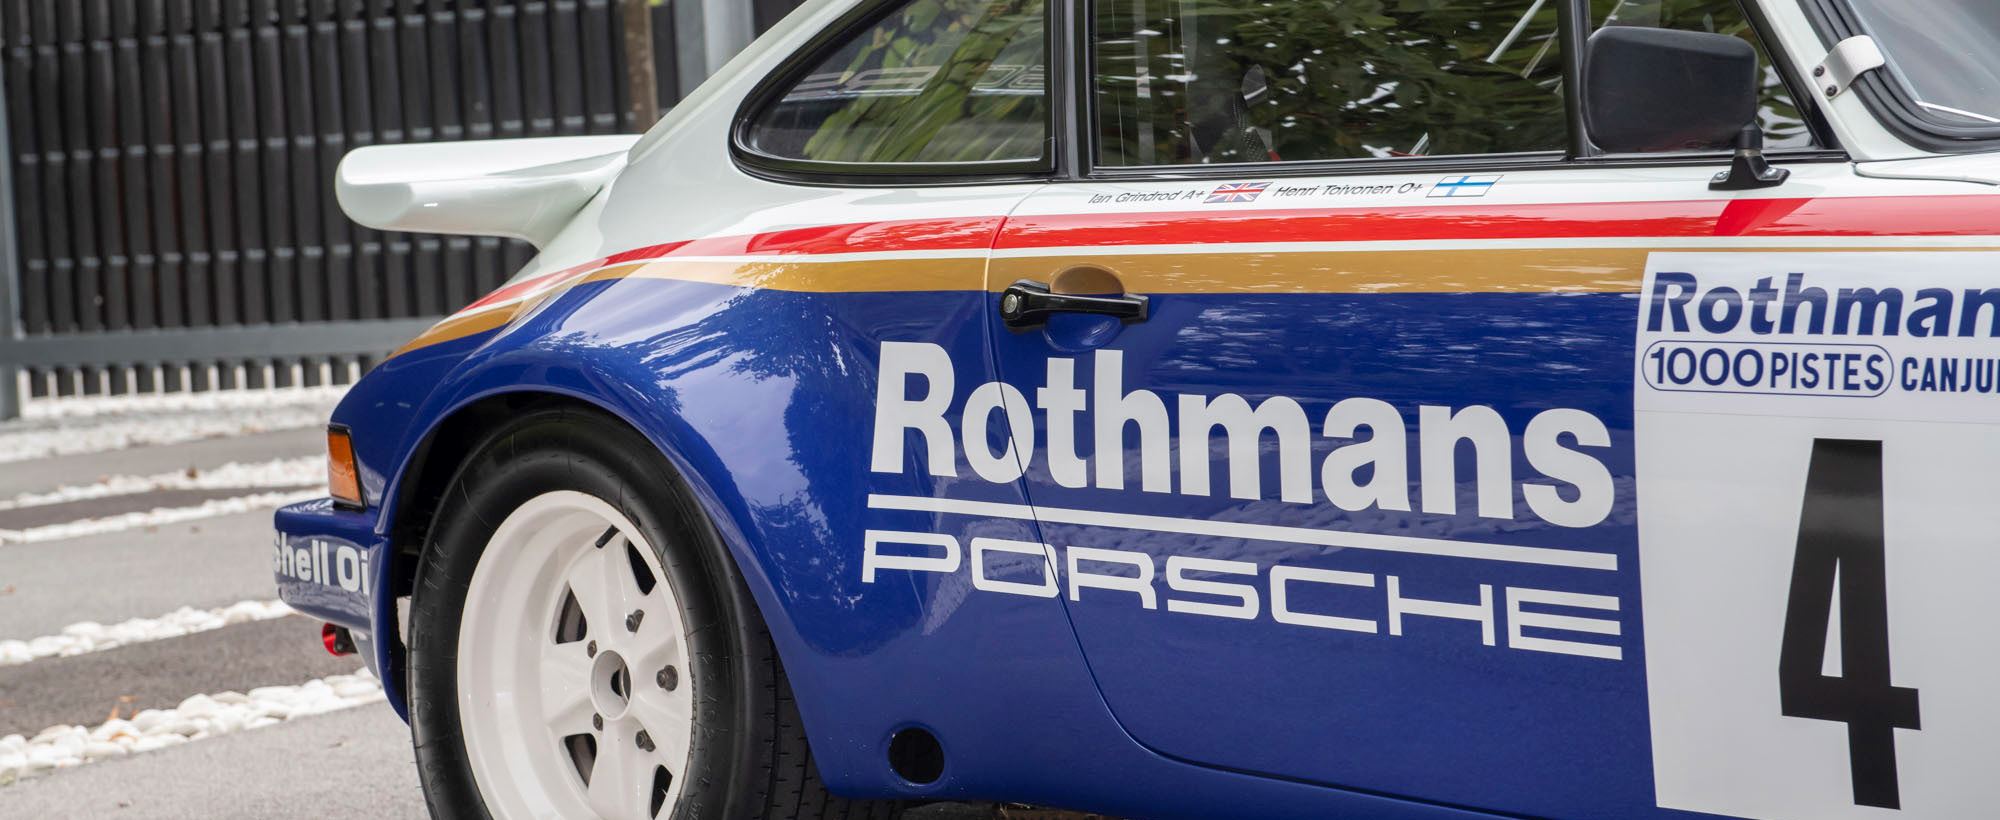 Porsche 911 Rothmans 064.jpg